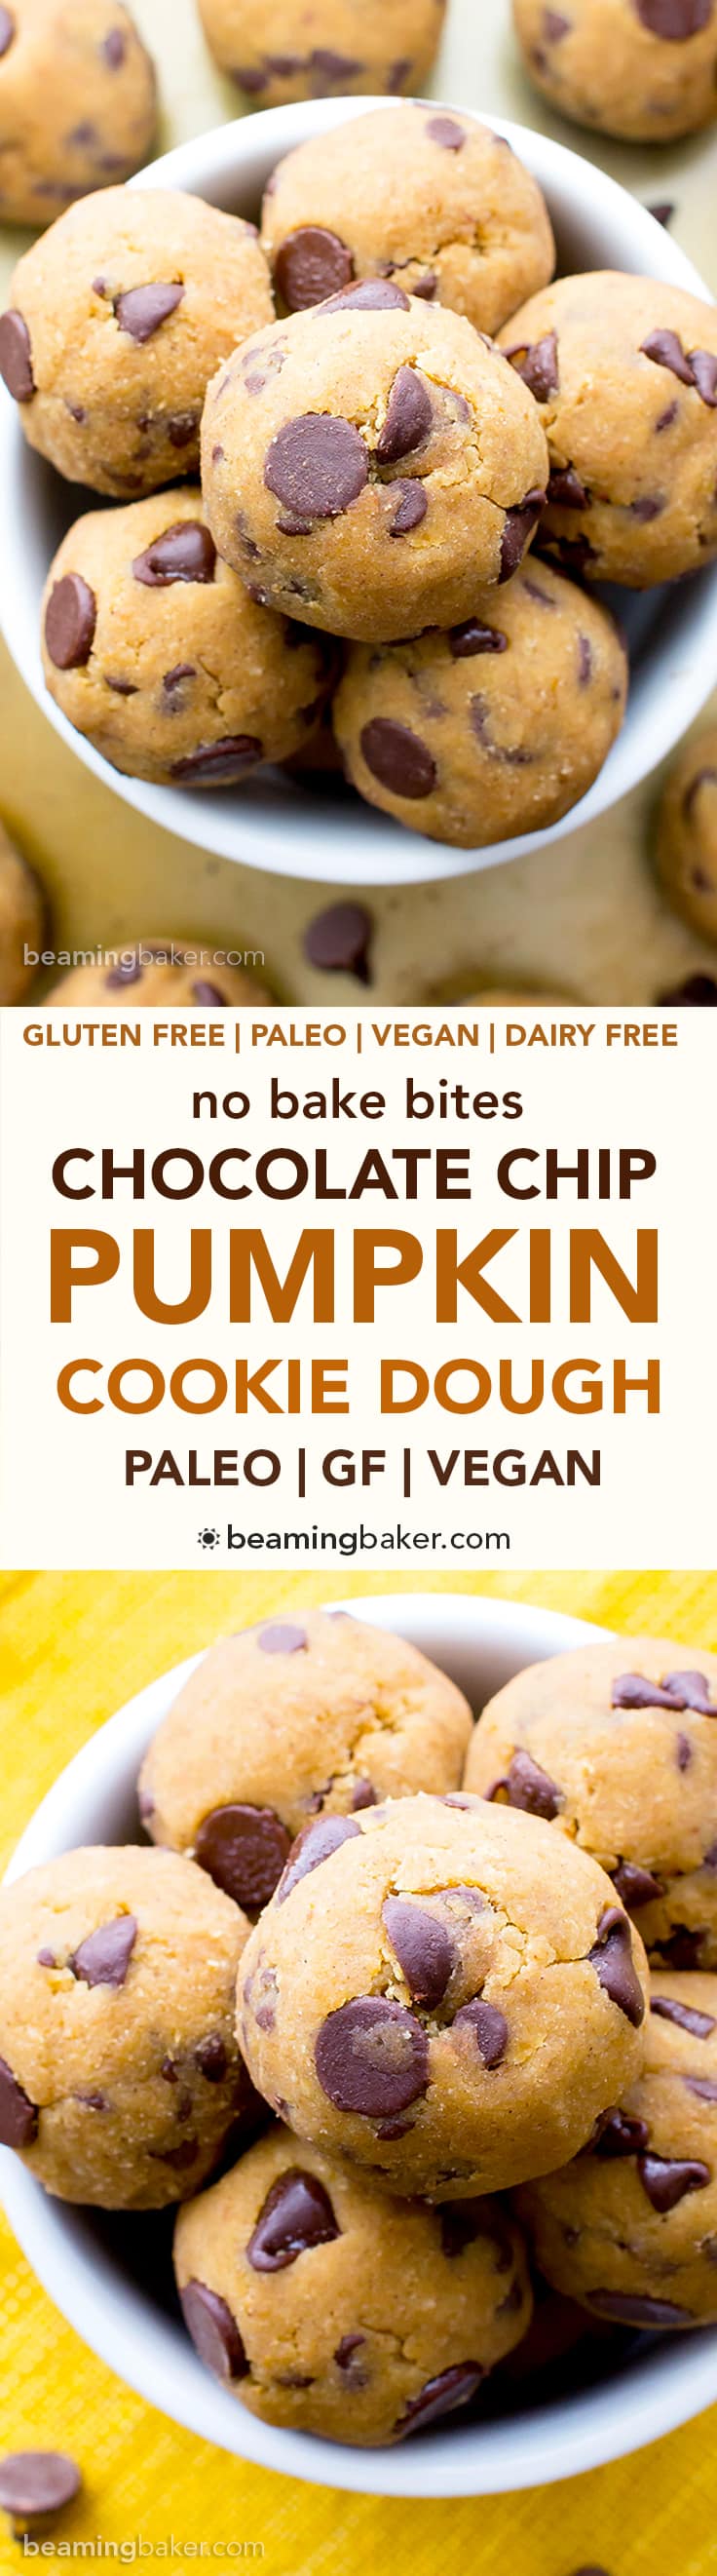 No Bake Pumpkin Chocolate Chip Cookie Dough Bites (Paleo, V, GF): a one bowl recipe for delicious cookie dough bites packed with pumpkin and chocolate chips. #Paleo #Vegan #GlutenFree #DairyFree | BeamingBaker.com